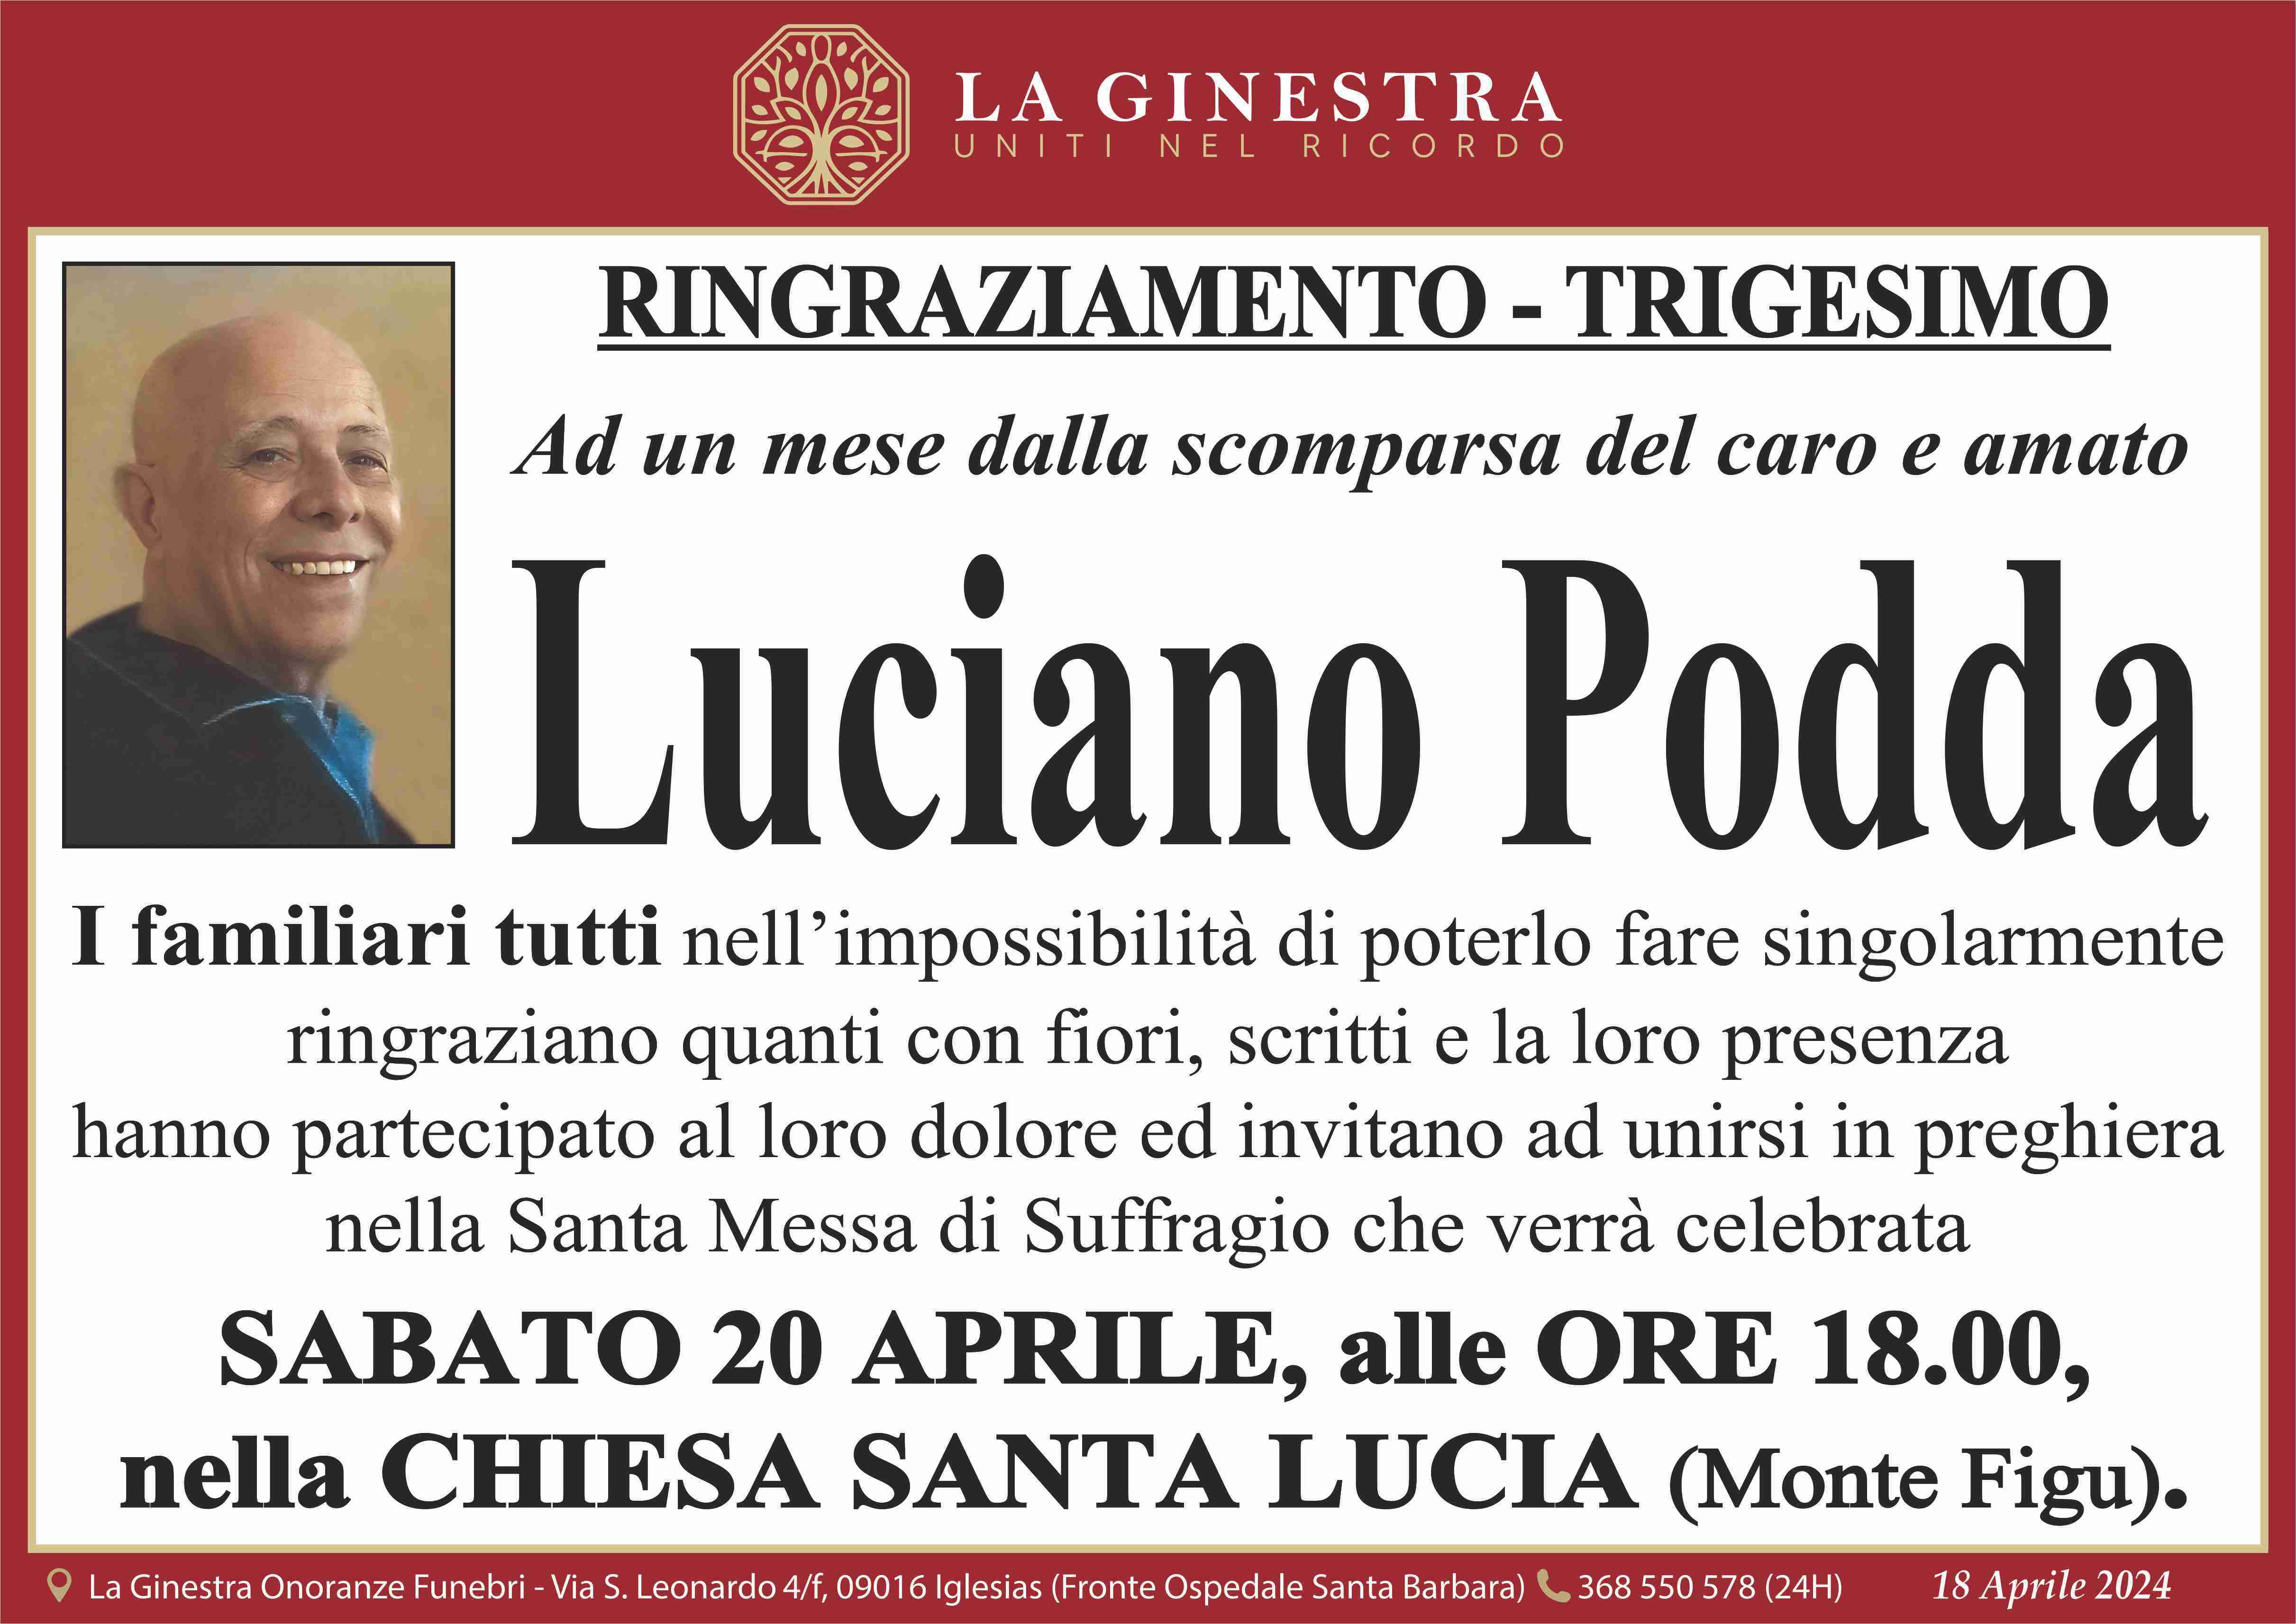 Luciano Podda